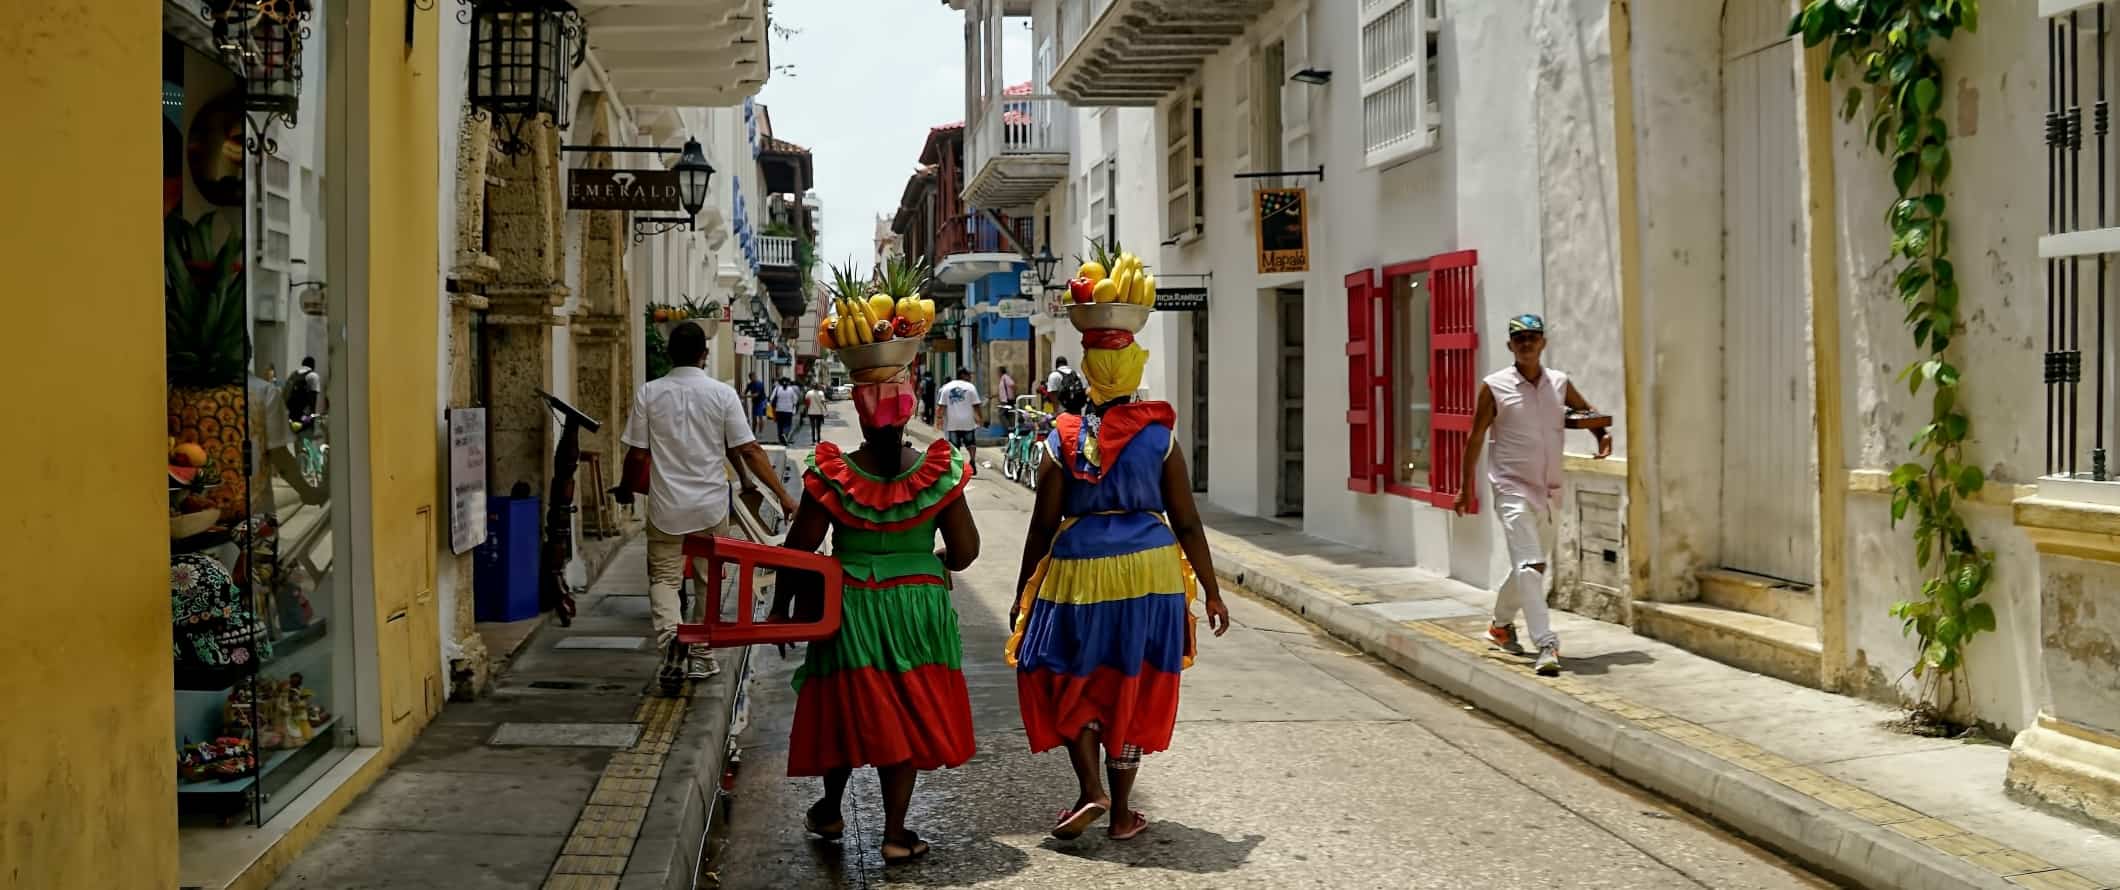 Duas mulheres em vestidos coloridos brilhantes atravessam a rua com cestas de frutas na cabeça em Cartagena, Colômbia, com um orçamento de 